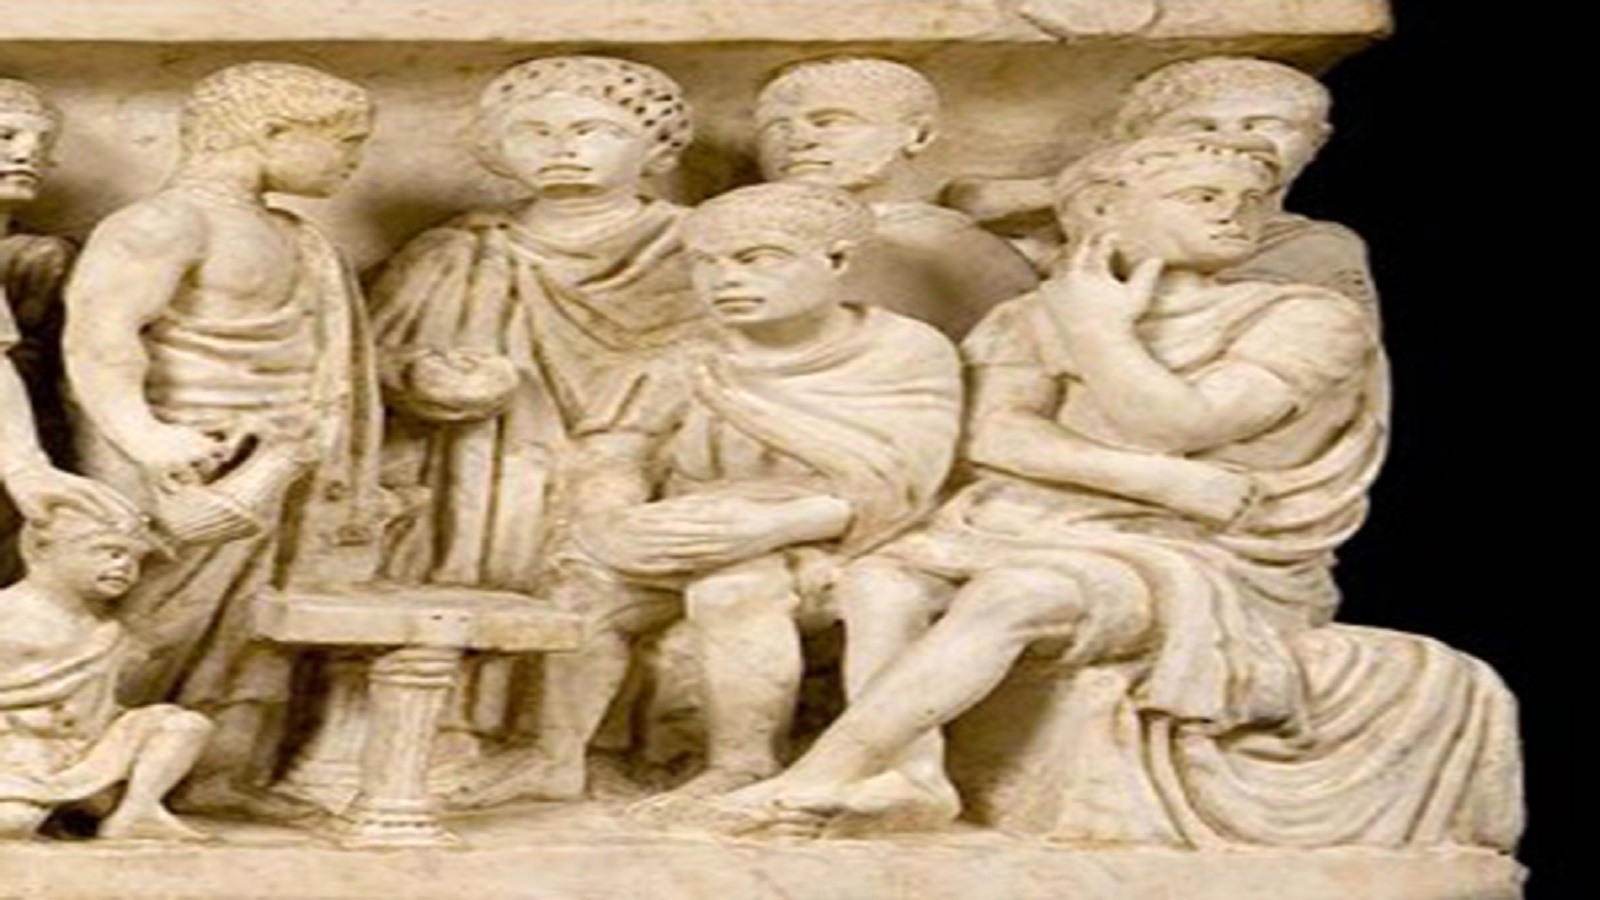 بيلاطس يغسل يديه من دماء المسيح، تفصيل من ناووس من منصف القرن الرابع يُعرف باسم "ناووس الشقيقين"، من محفوظات الفاتيكان.